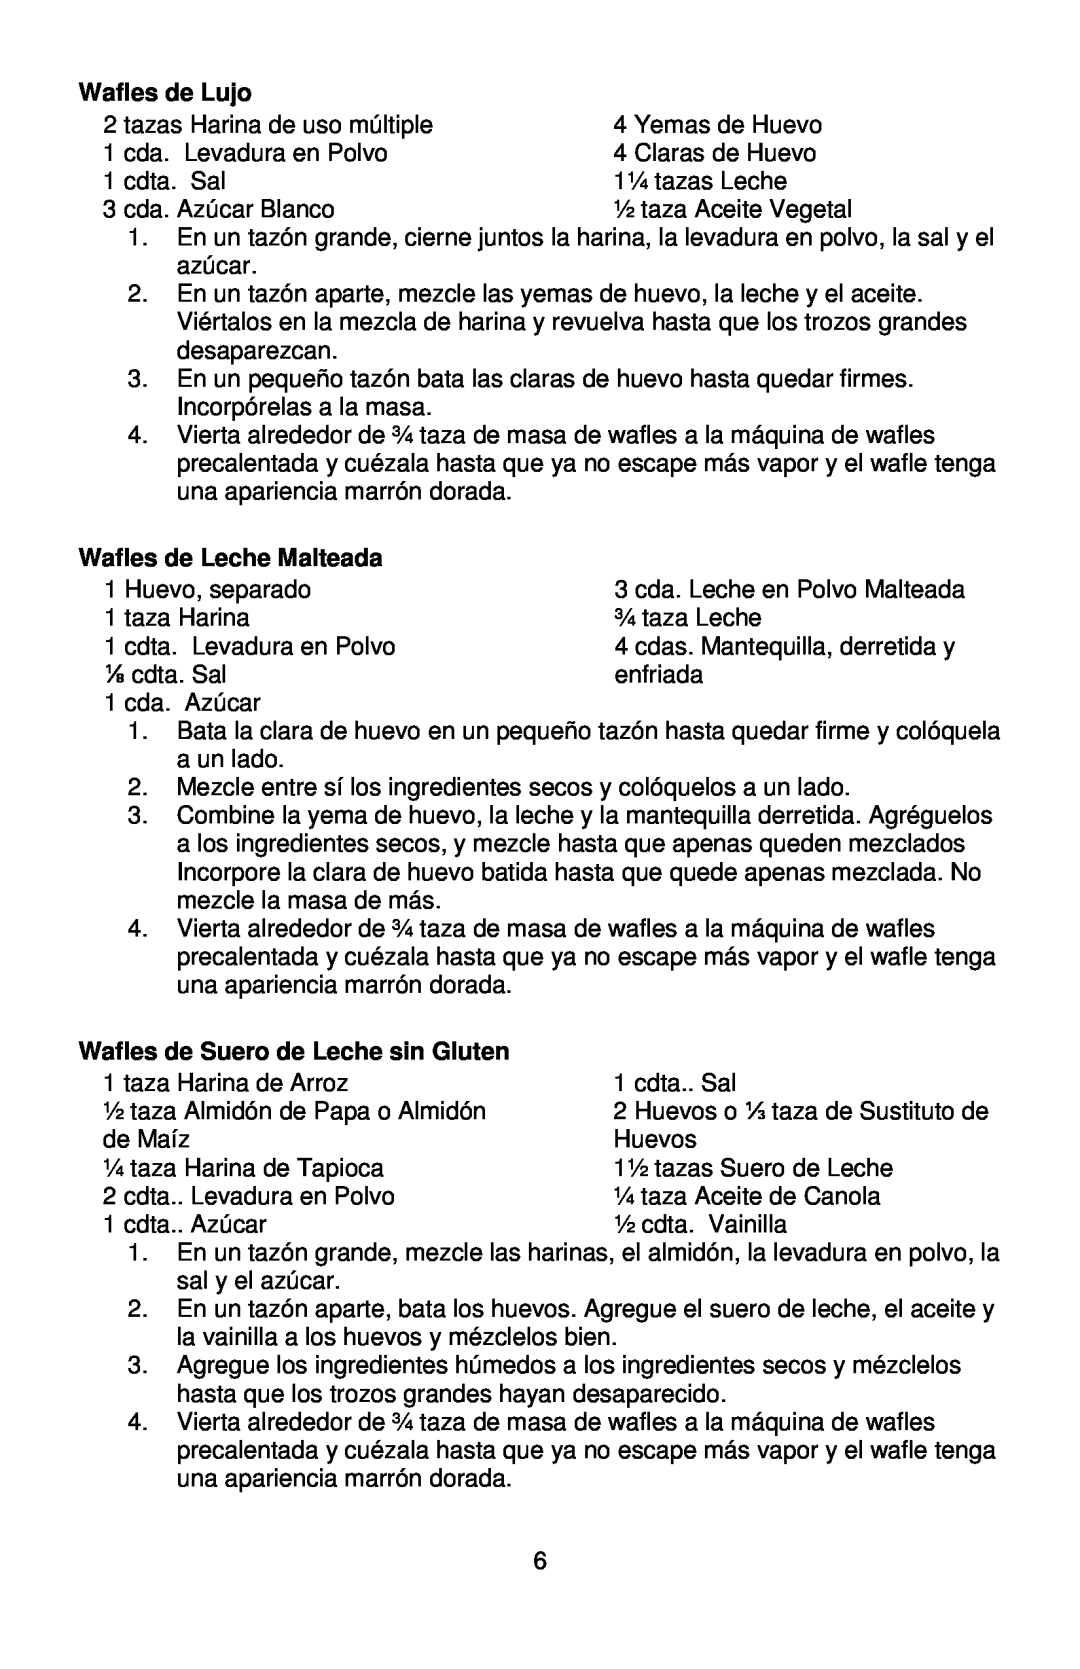 West Bend L5790A, 6200 instruction manual Wafles de Lujo, Wafles de Leche Malteada, Wafles de Suero de Leche sin Gluten 